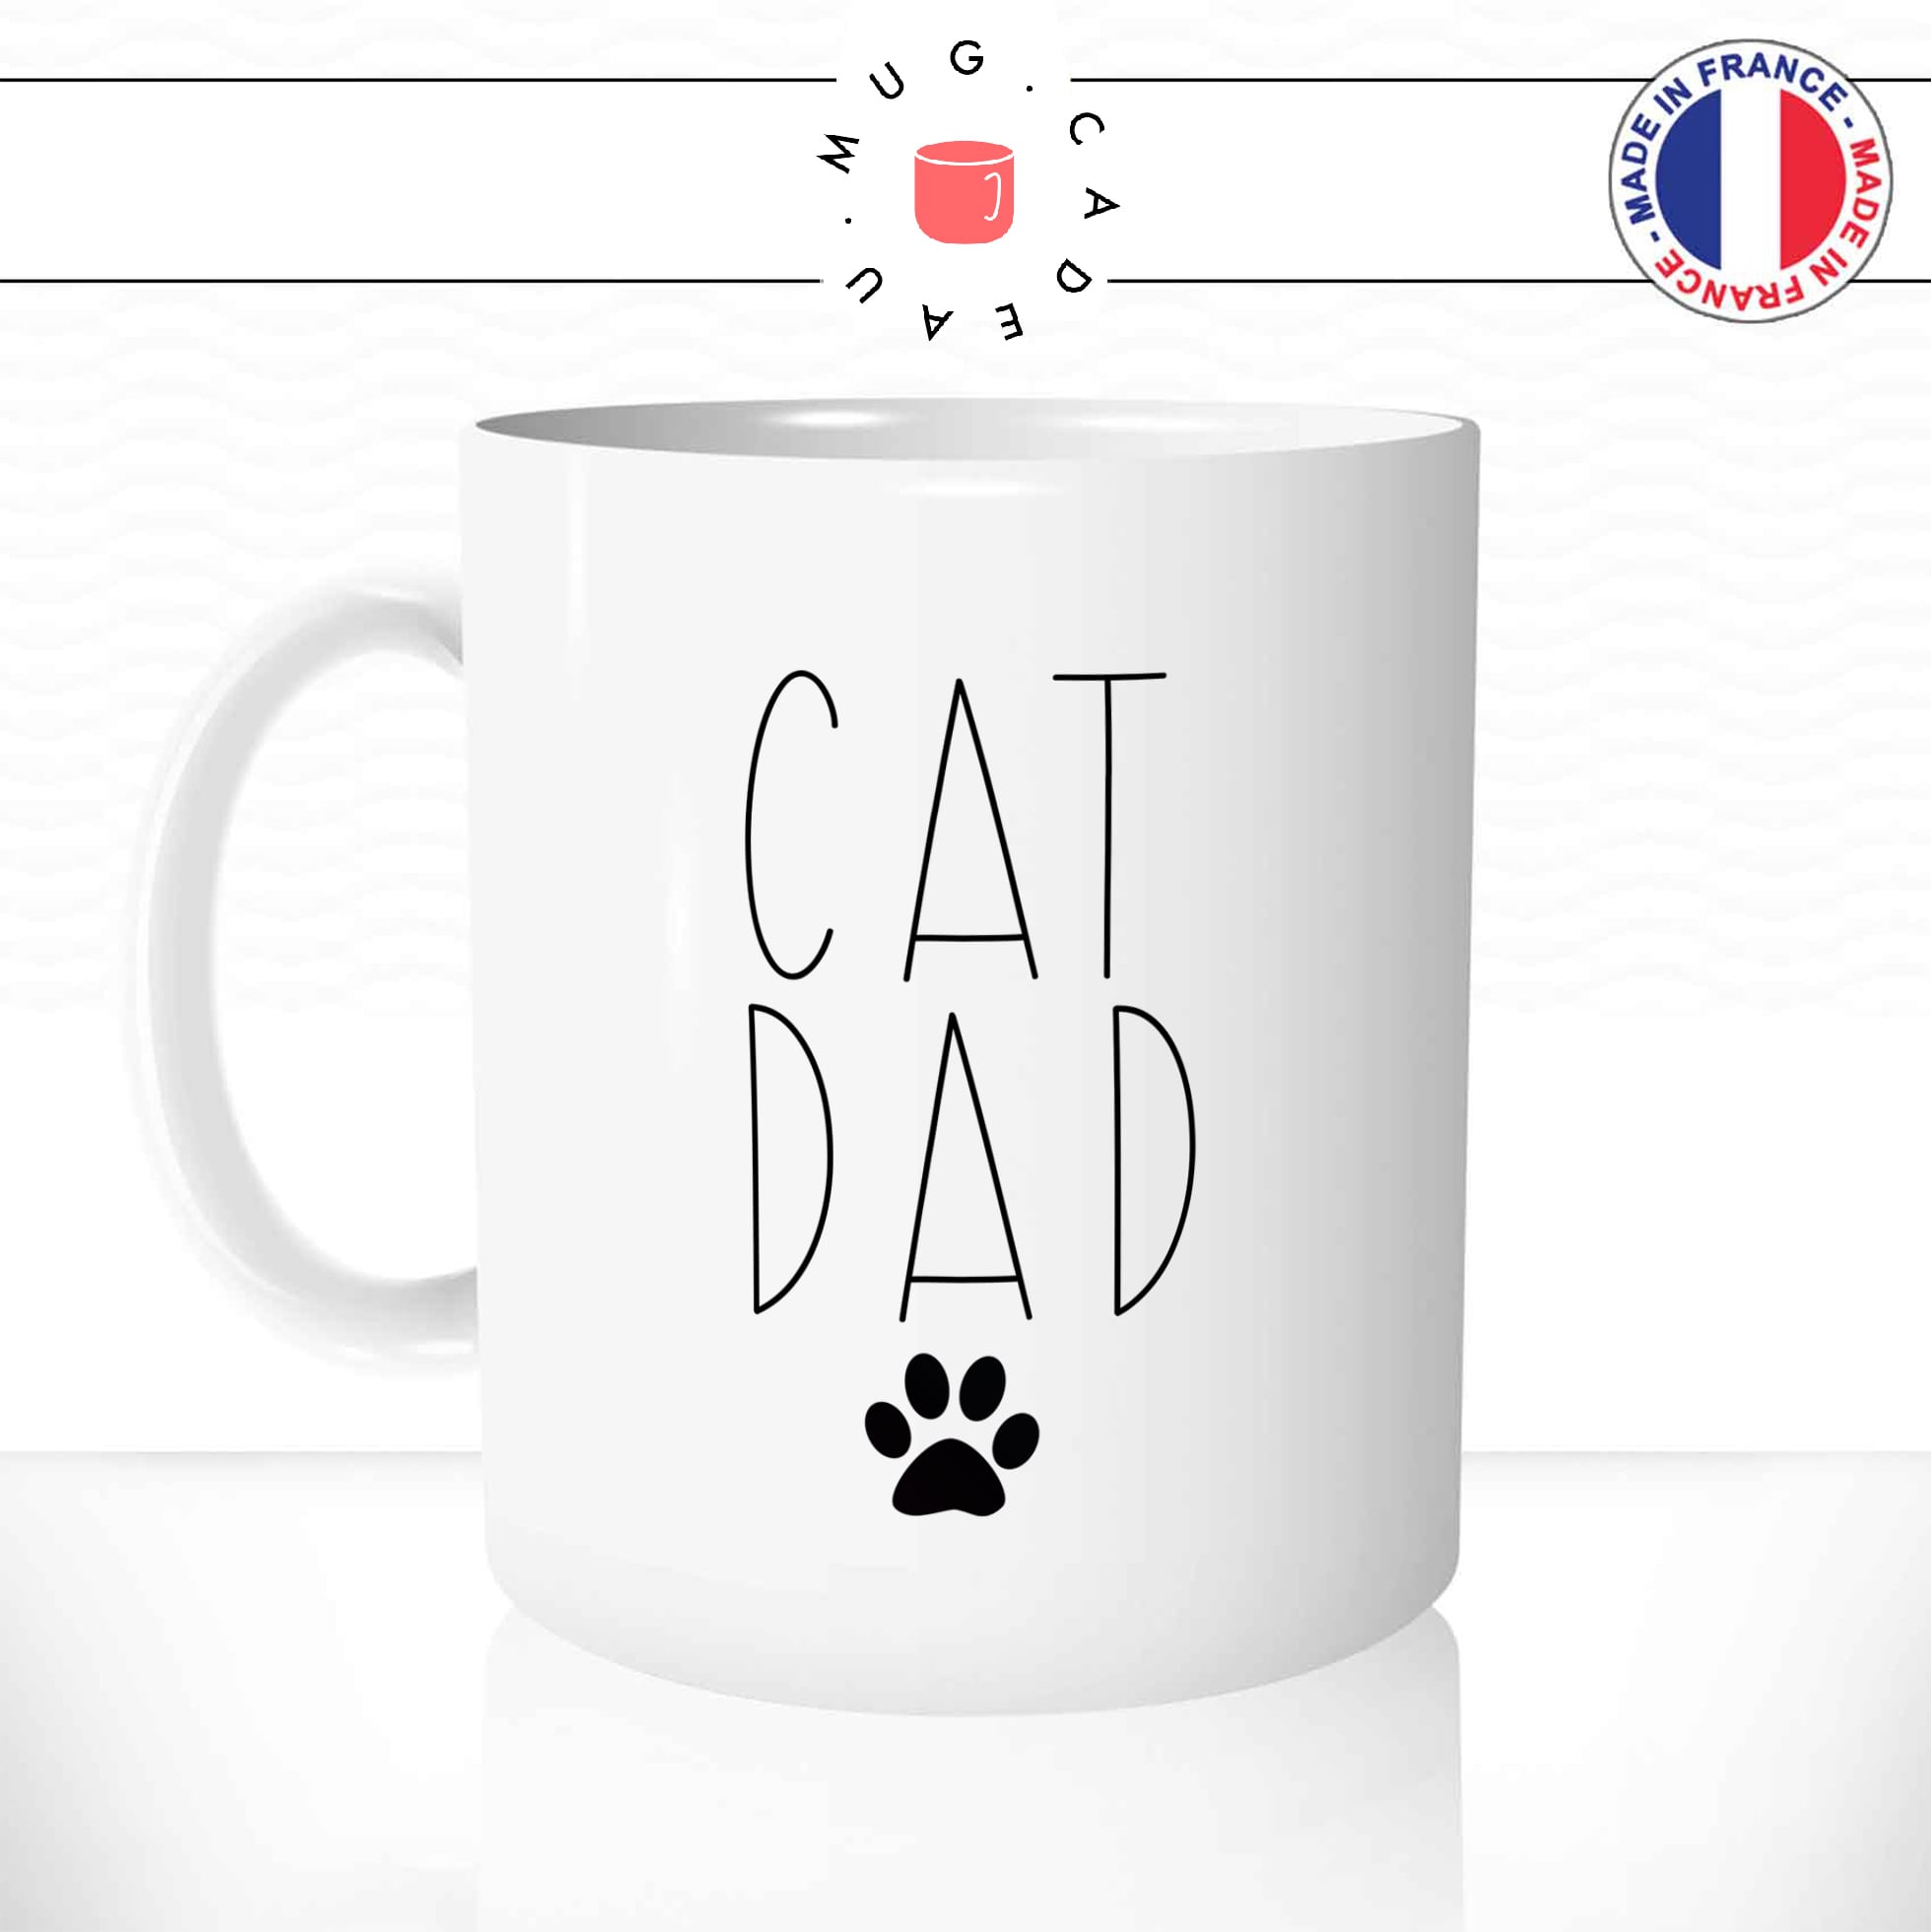 Mug Cat Dad